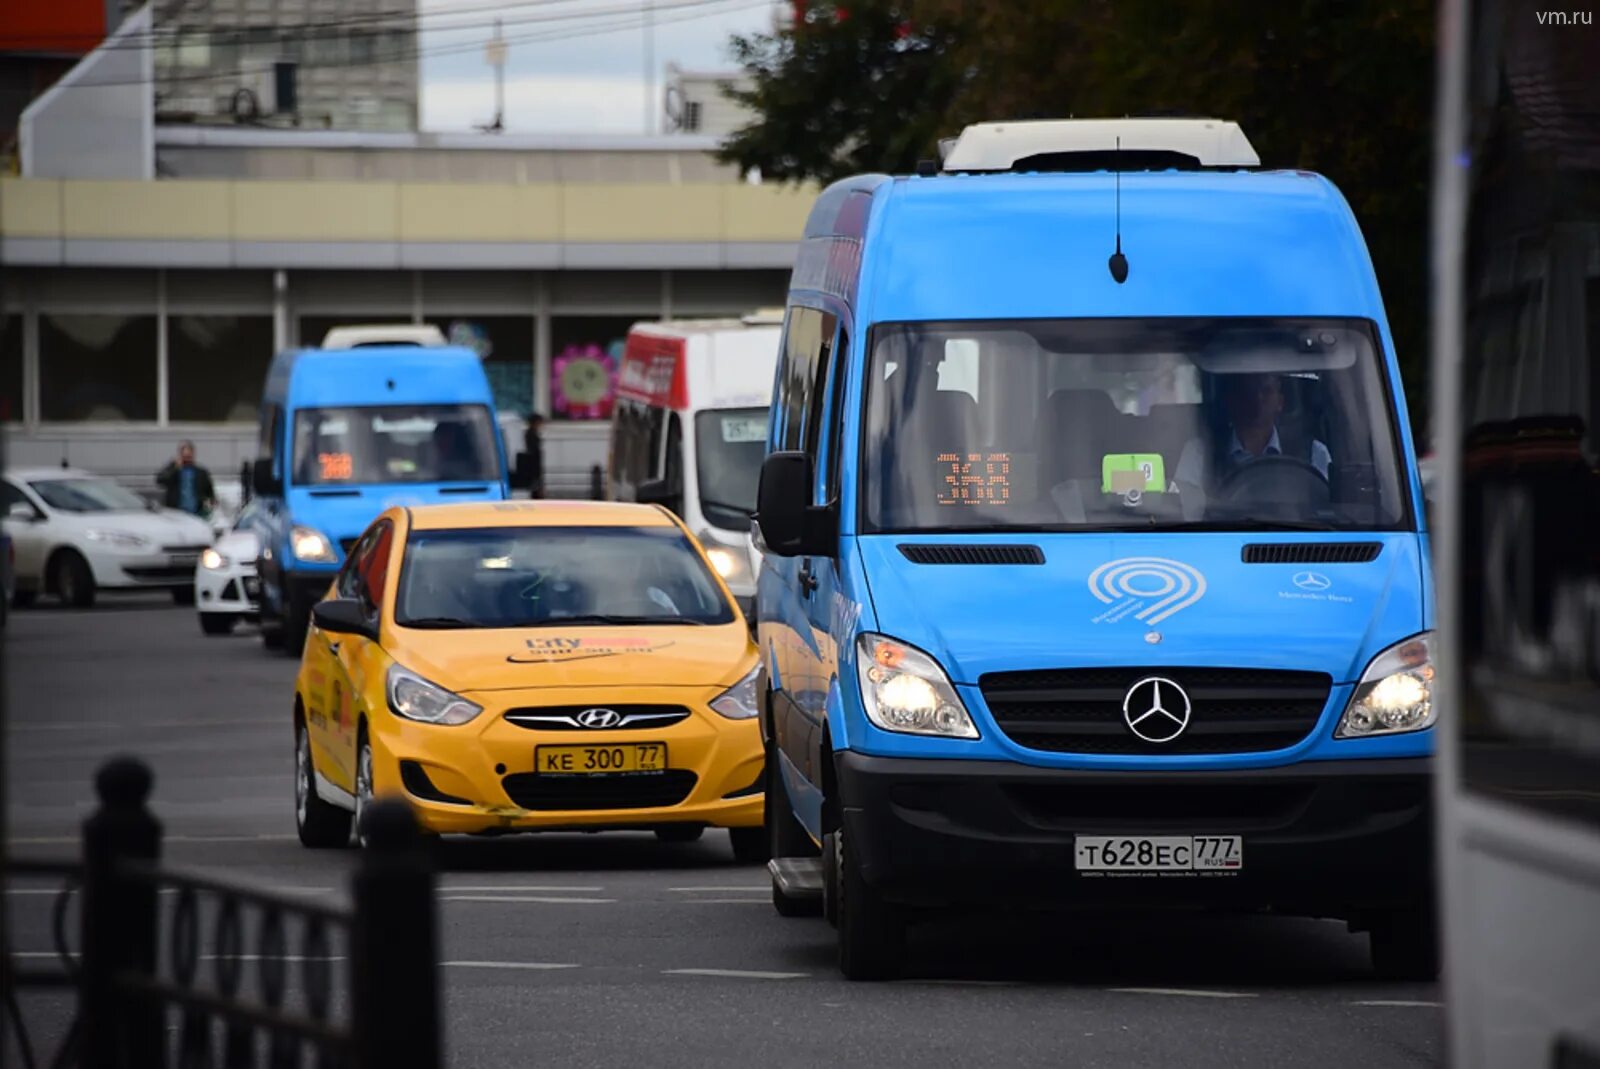 Маршрутное такси 22. Fiat Ducato автобус Мосгортранс. Общественный транспорт такси. Маршрутное такси в Москве. Автобус и автомобиль.